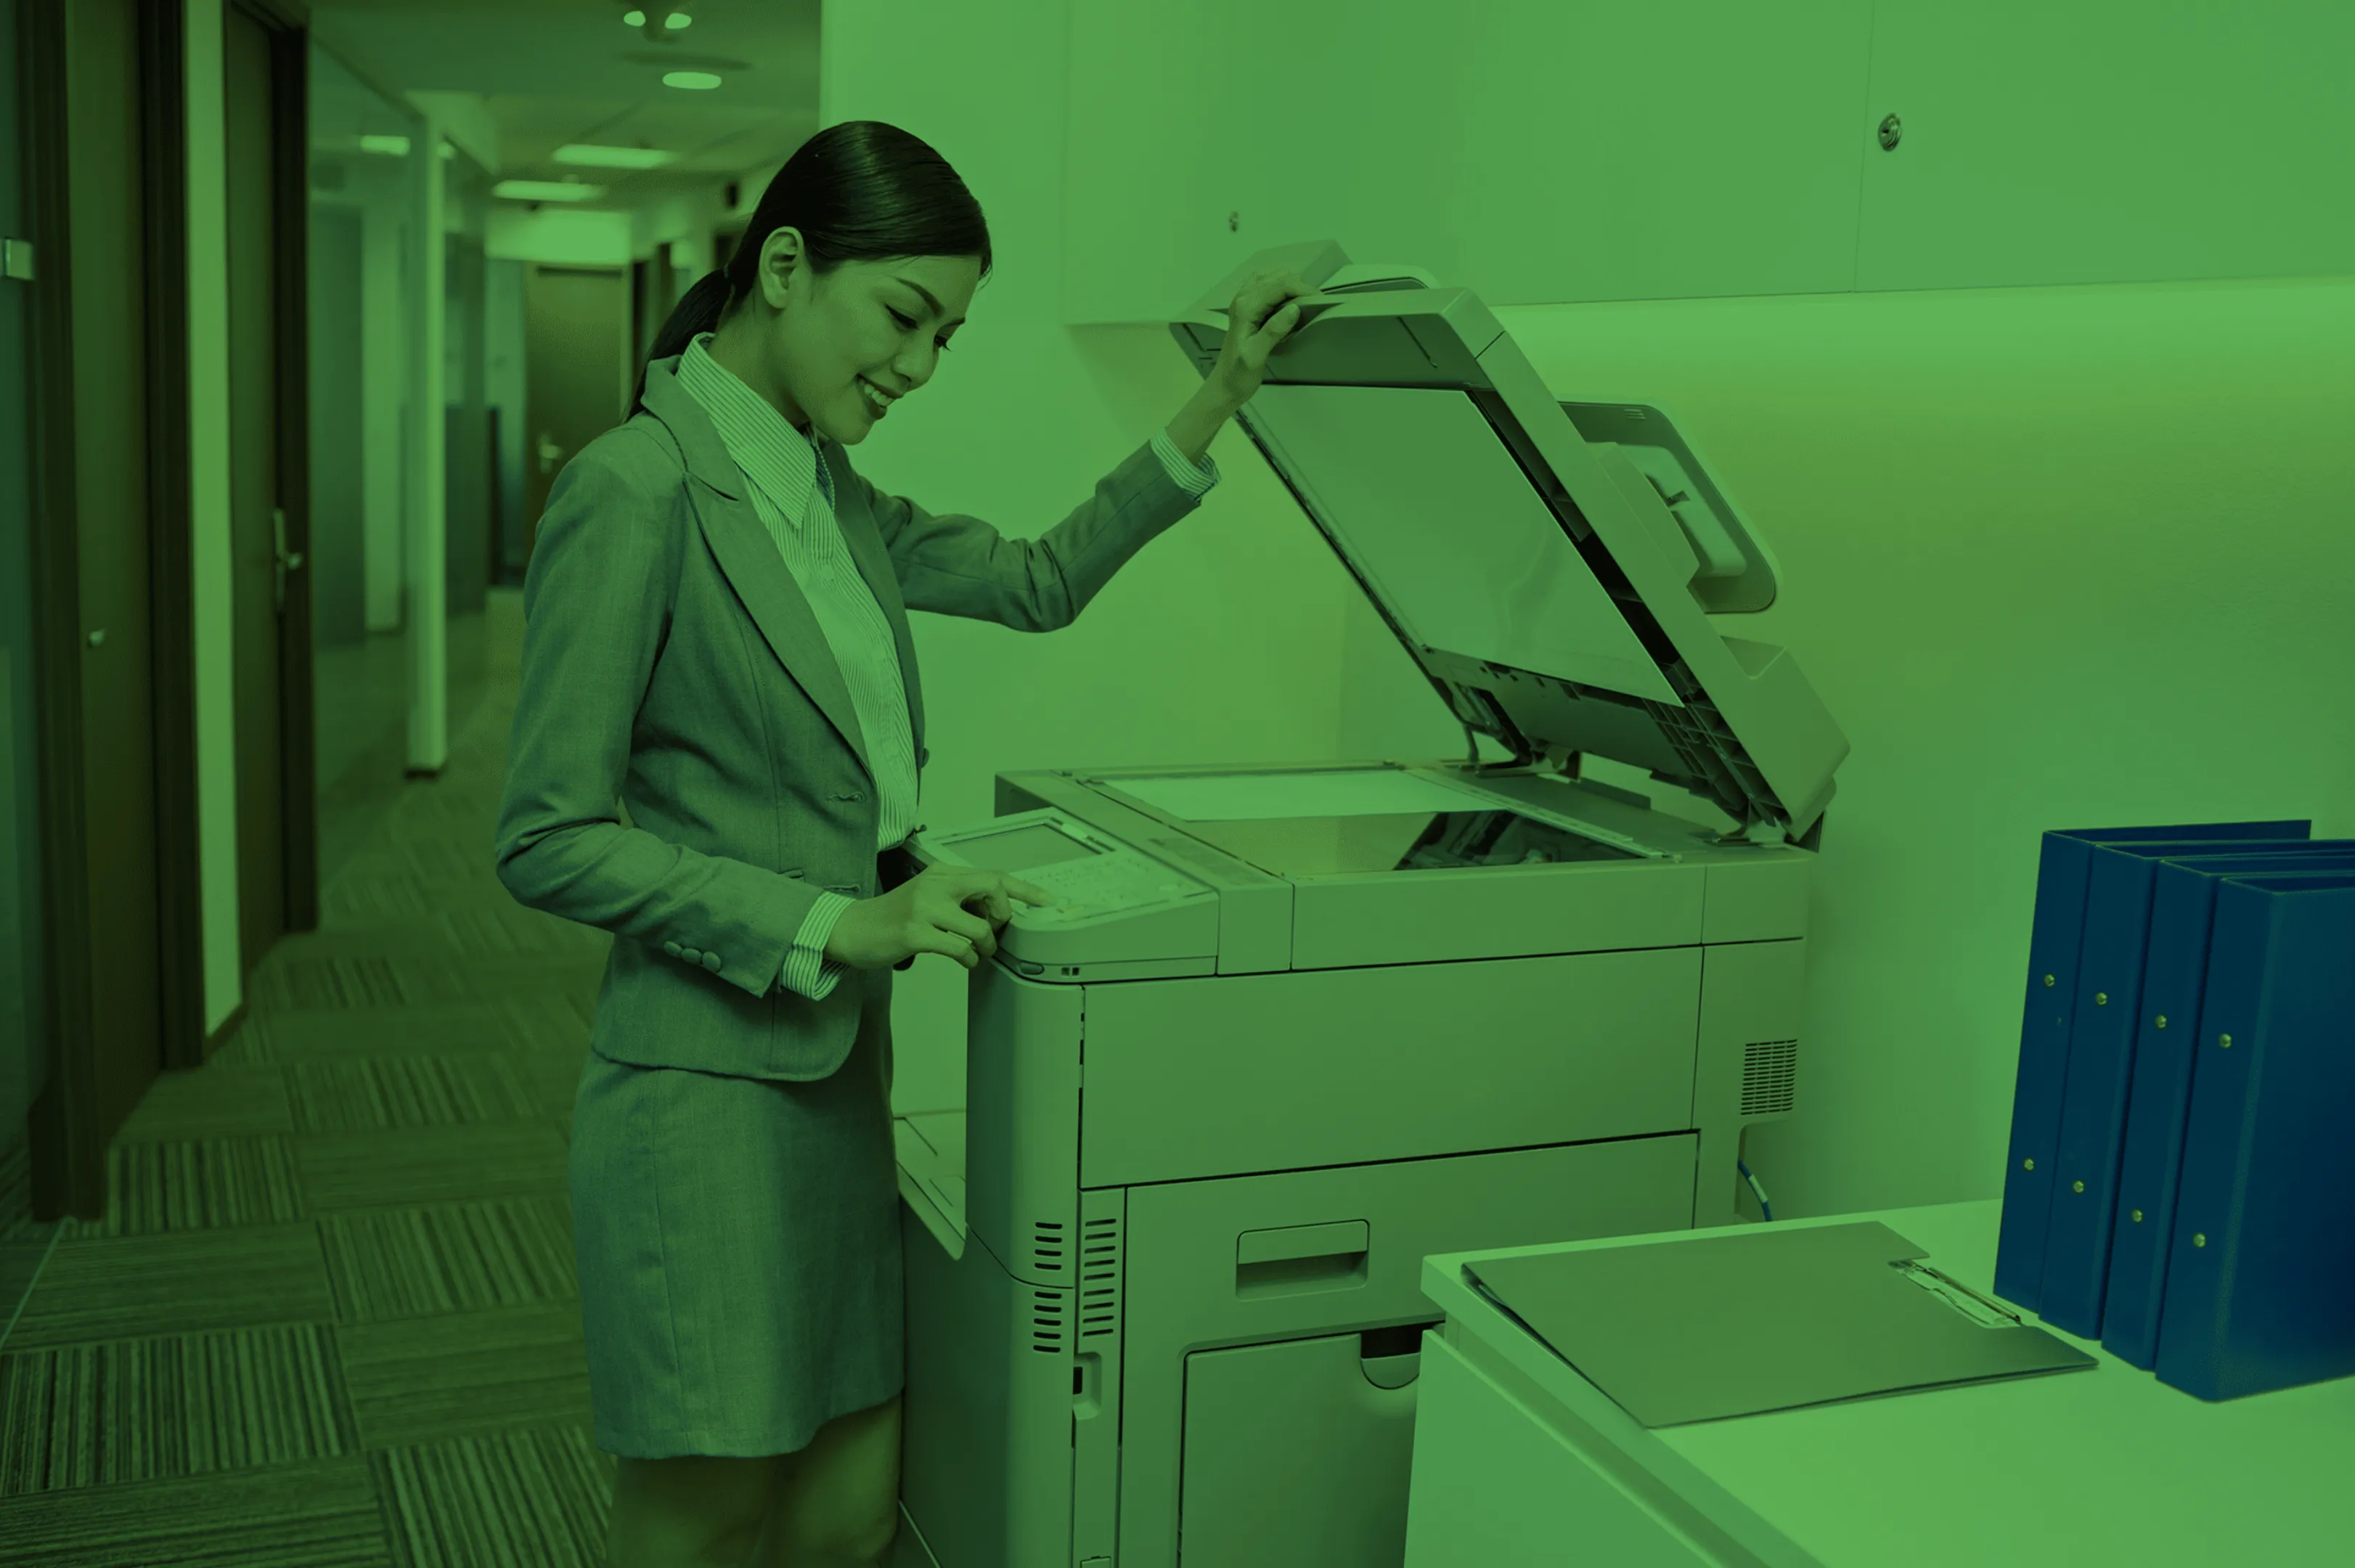 MX Escaner Documentos alta velocidad - Escáner de documentos precios.  Renta, Mantenimiento y Reparación de escáner de alta velocidad. Instalación  y Capacitación